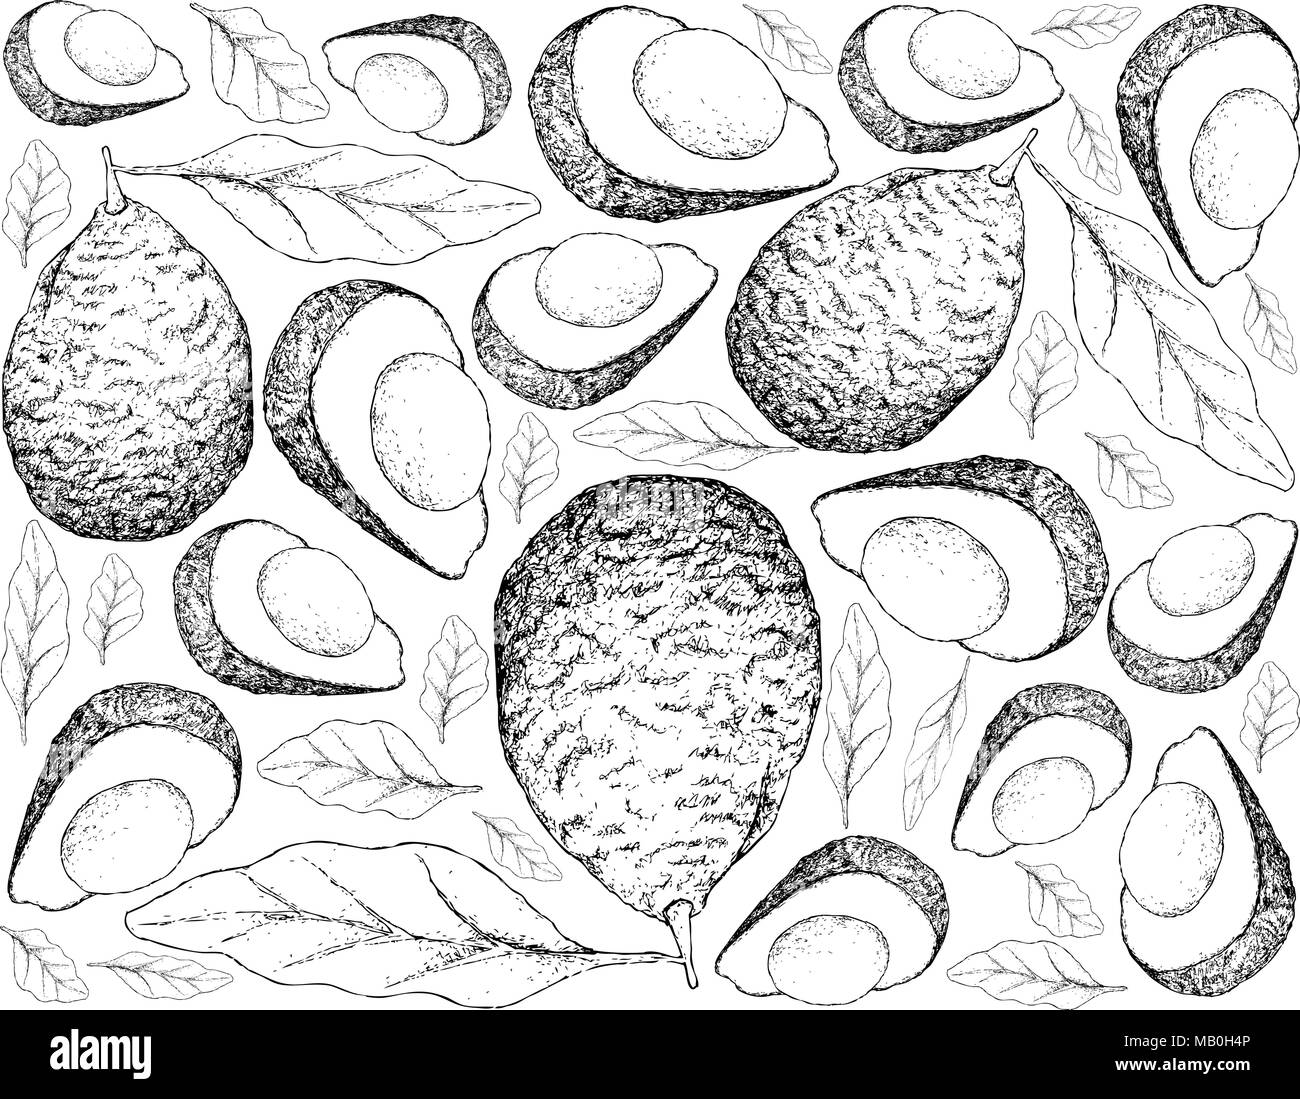 Petits fruits, Illustration Papier peint fond de croquis de la main verte fraîche ou d'avocat Persea americana de fruits. Riche en vitamines C, E Illustration de Vecteur